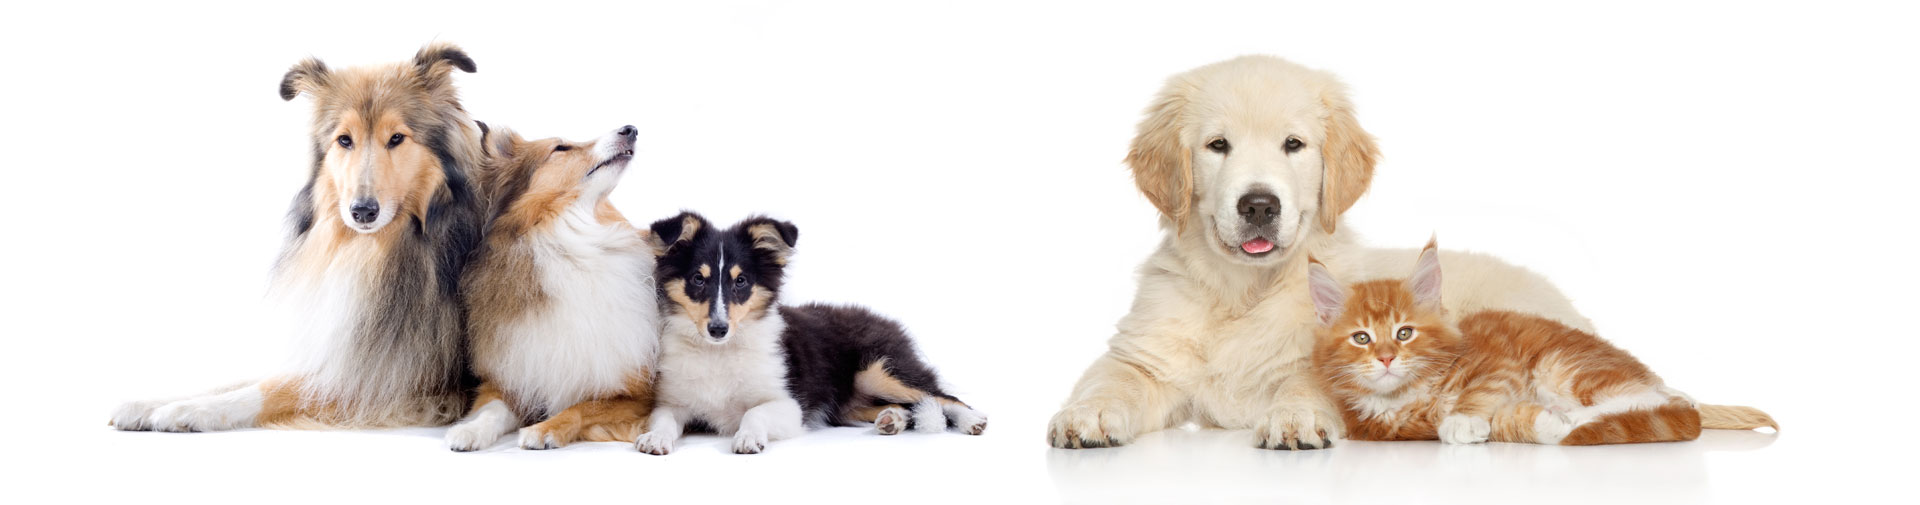 Porto Seguro Empresa - Seguro para pet shops e clínicas veterinárias